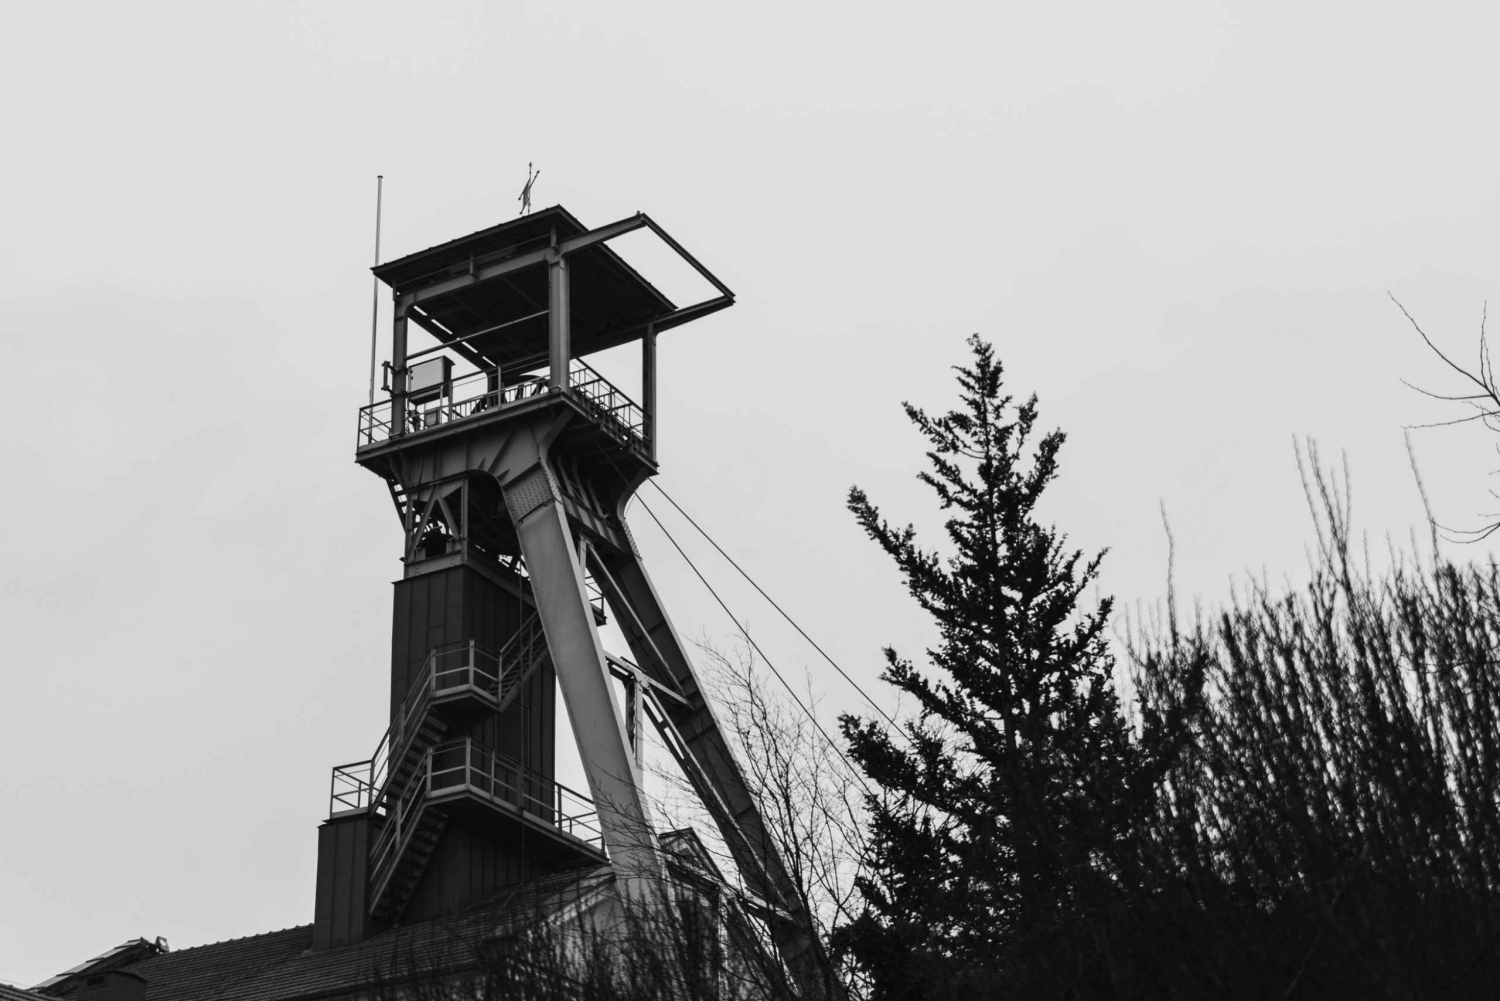 Wieliczka Salt Mine Half-Day Private Tour from Krakow